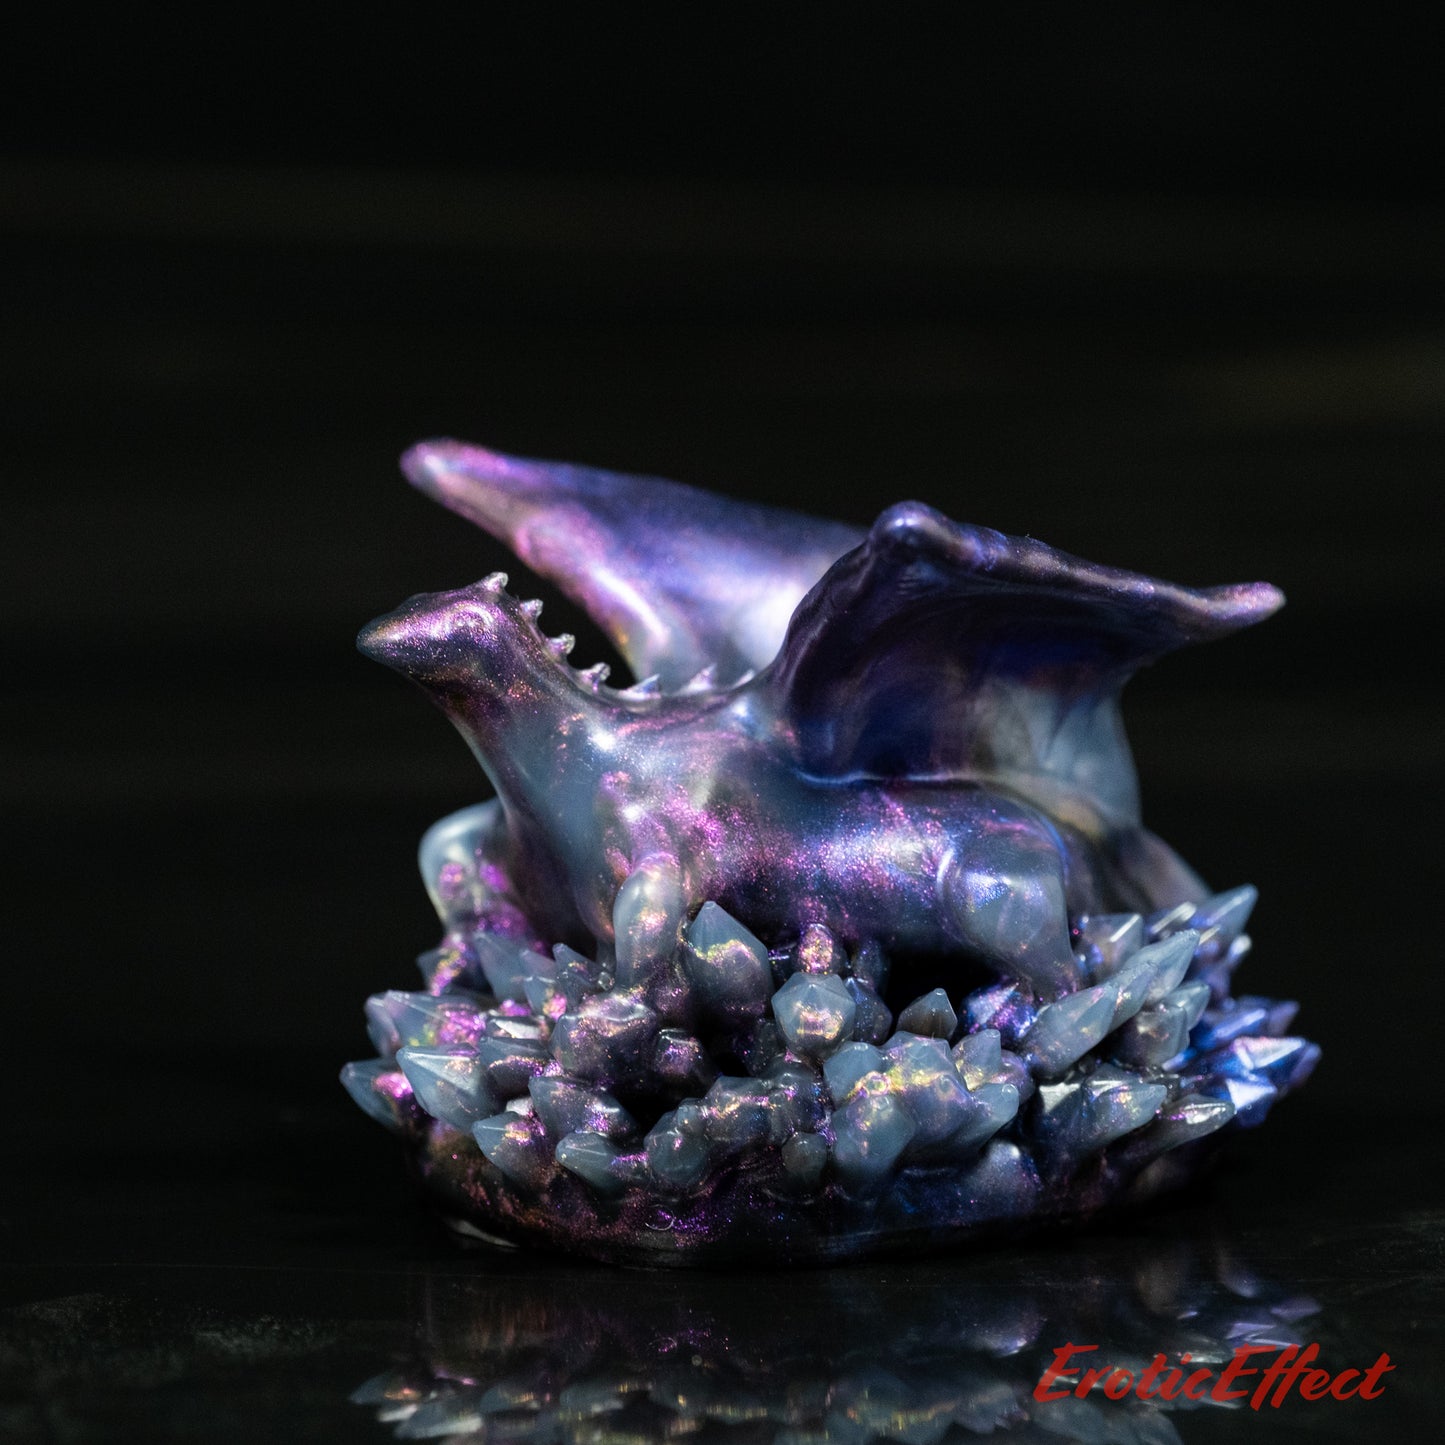 Crystal Dragon Silicone Squishy - NearClear Soft Firmness - 299